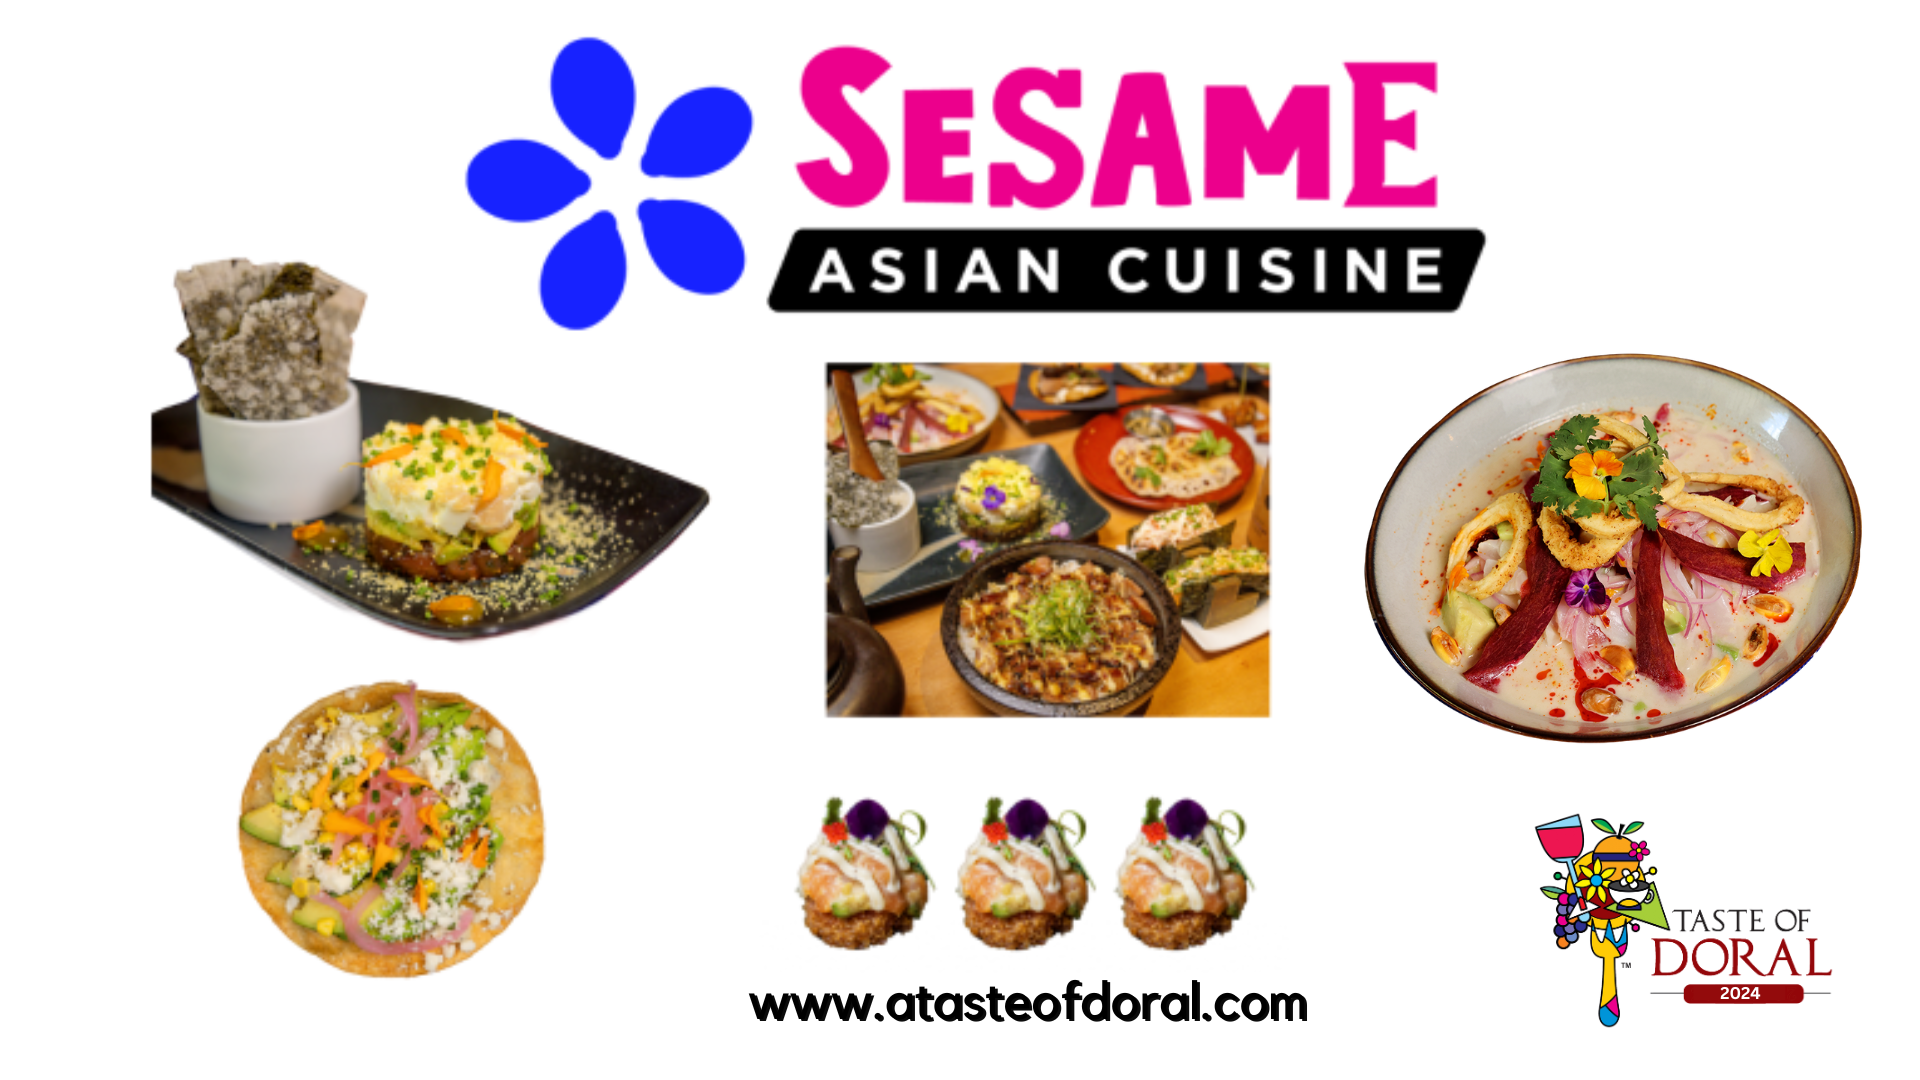 Sesame Asian Cuisine